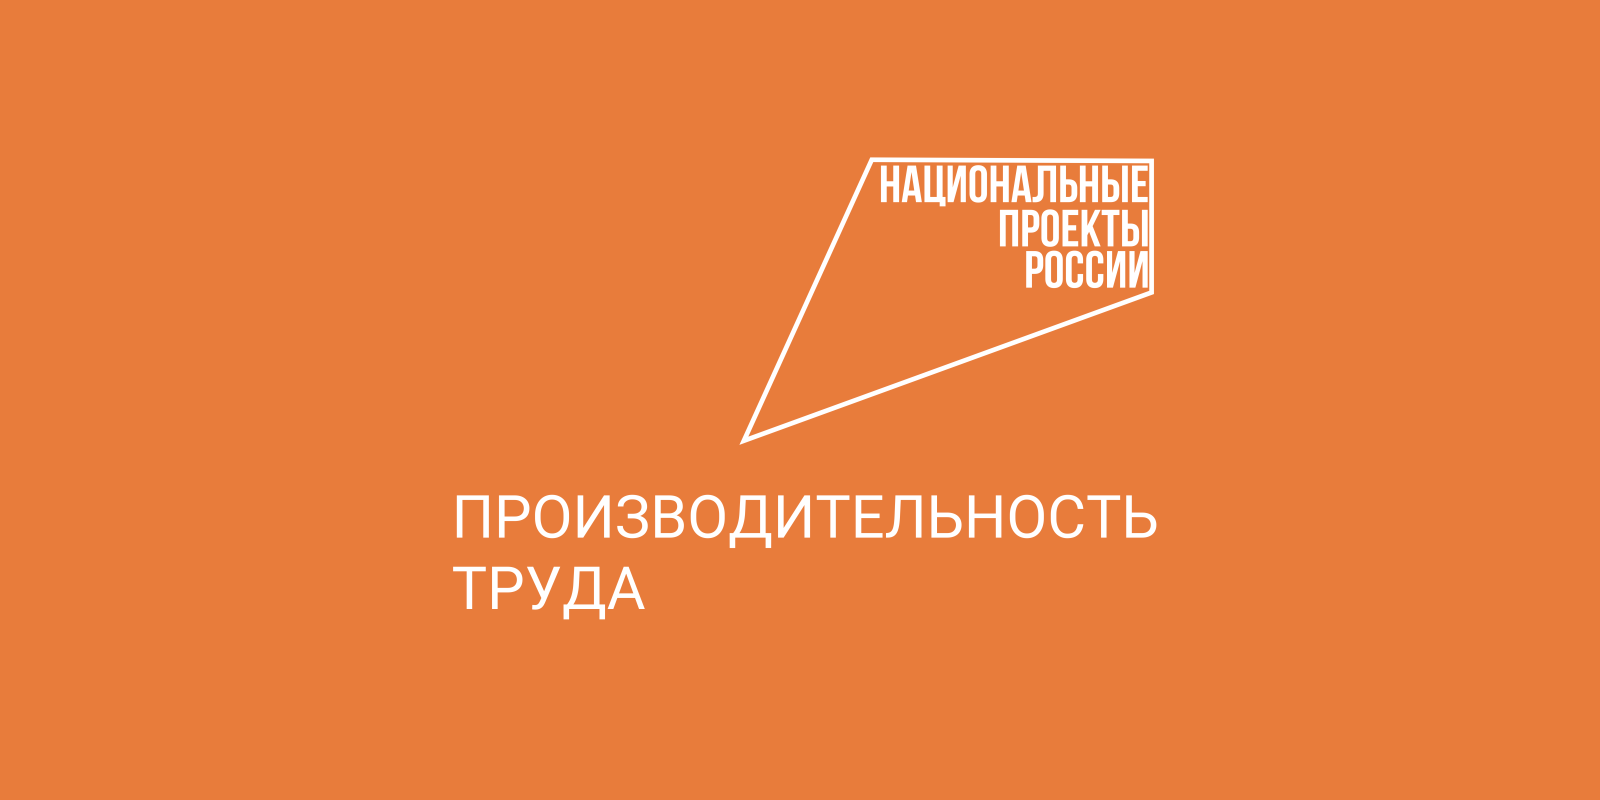 Около 250 млн рублей составил экономический эффект вологодских компаний в результате участия  в нацпроекте «Производительность труда».